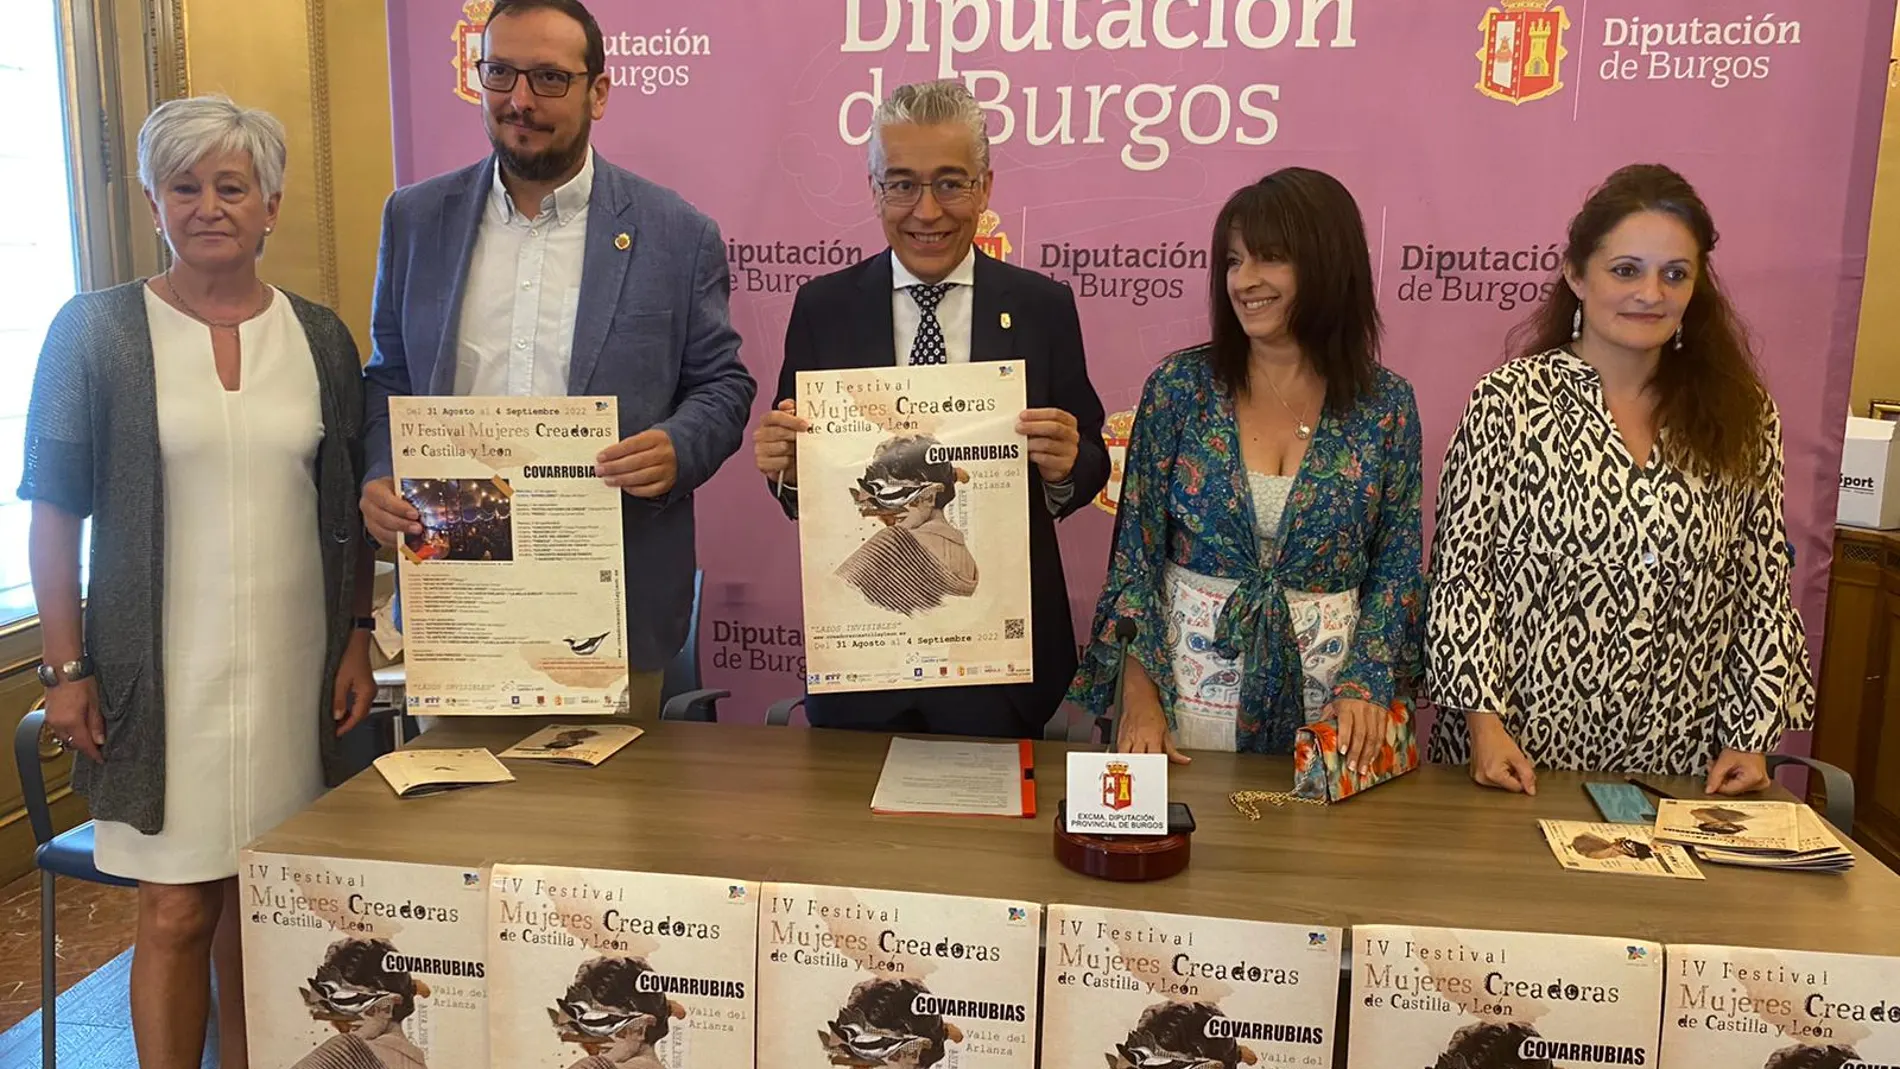 Presentación en Burgos del Festival de Mujeres Creadoras de Castilla y León